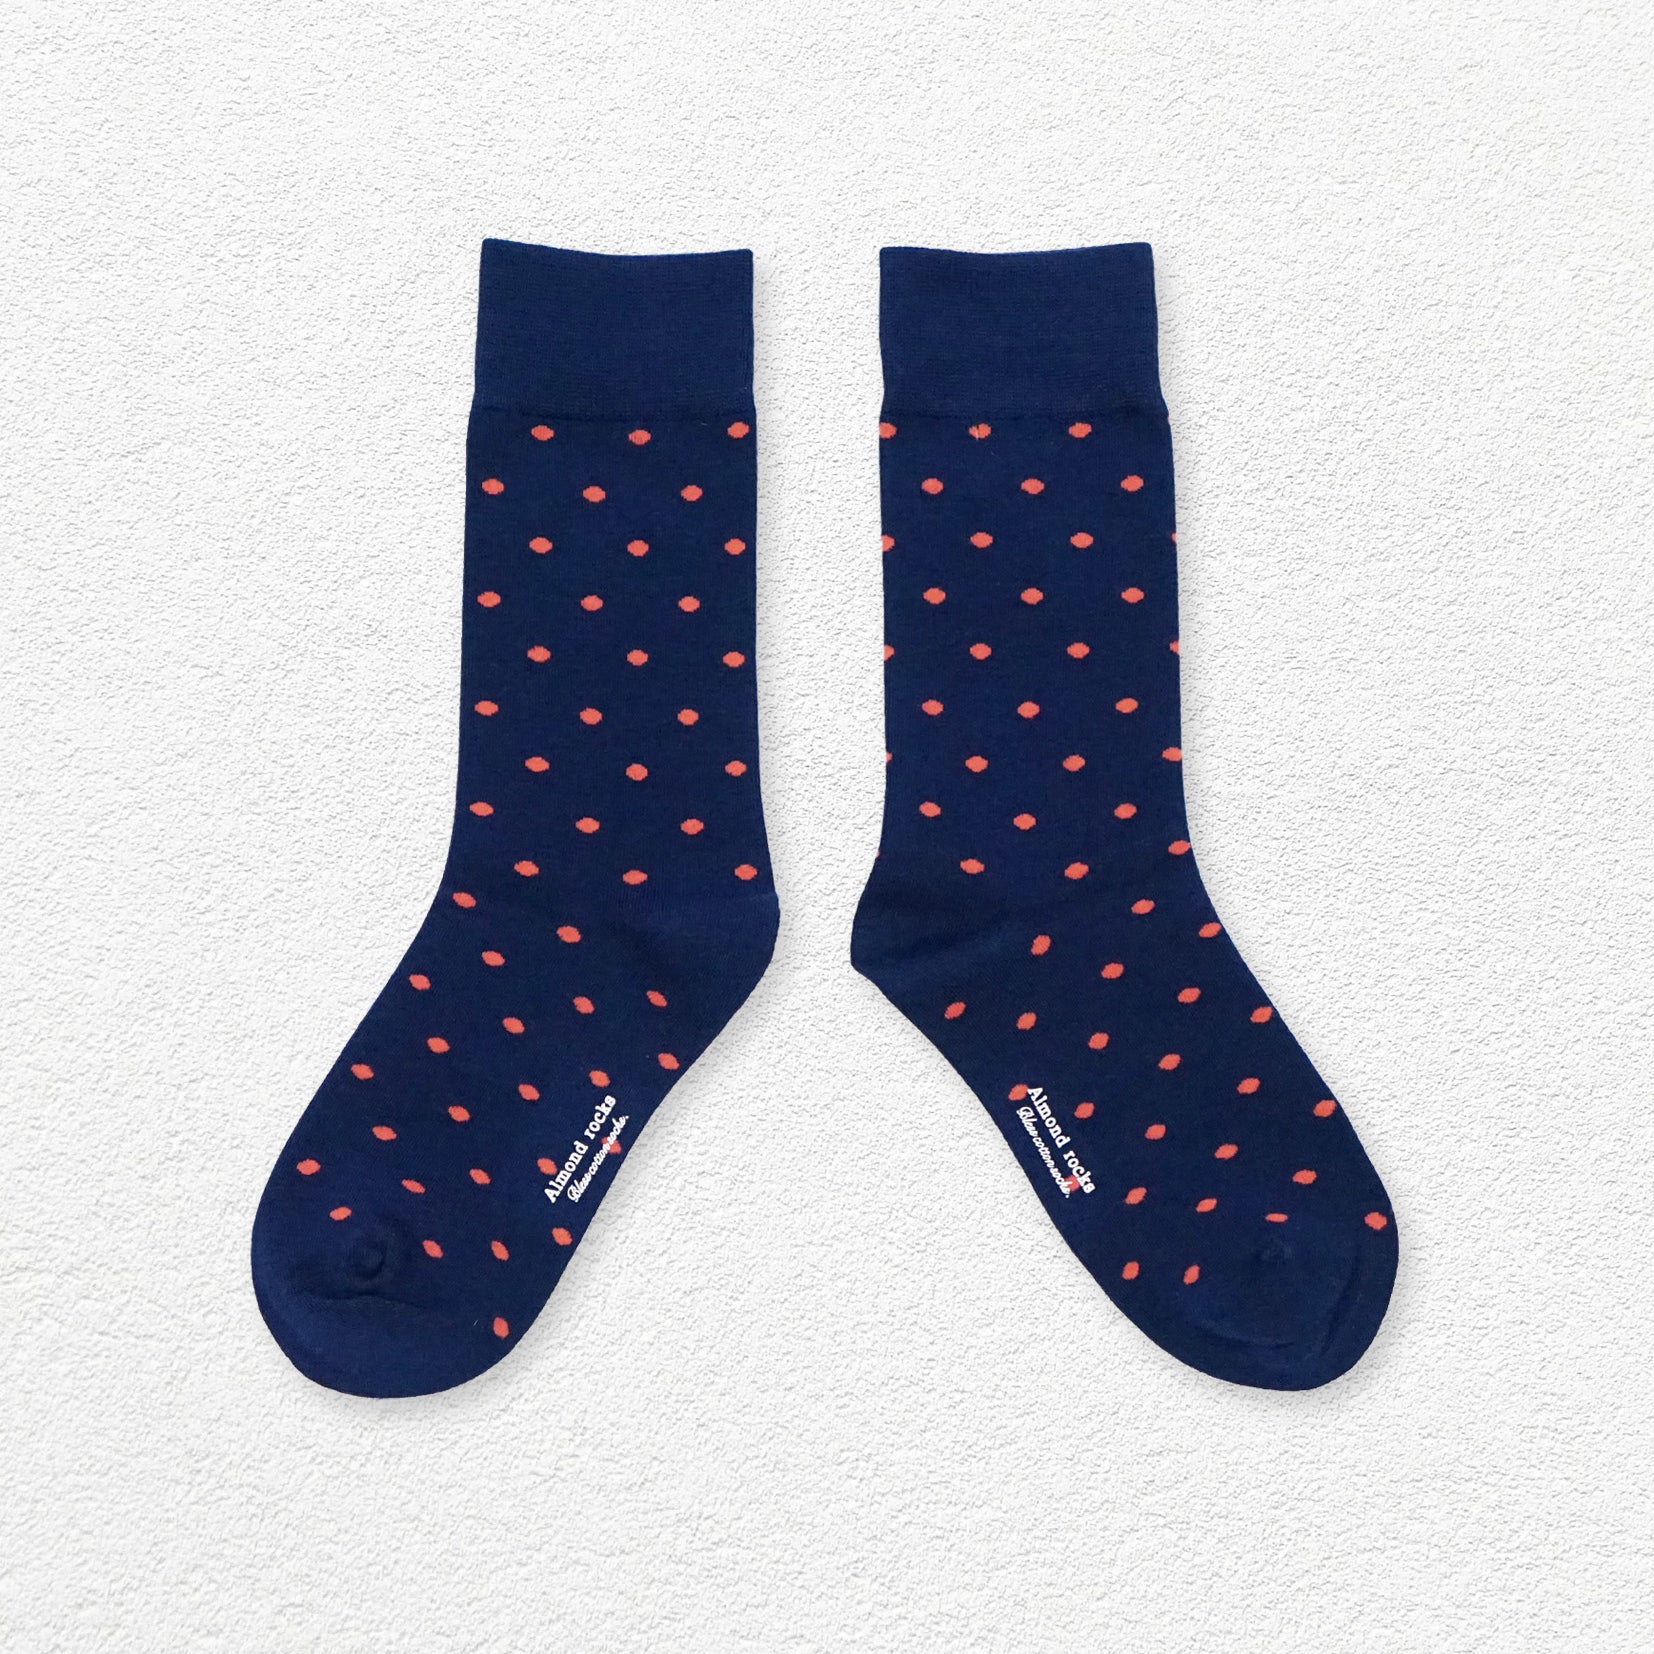 Tiny polka dot mid-calf sock - navy